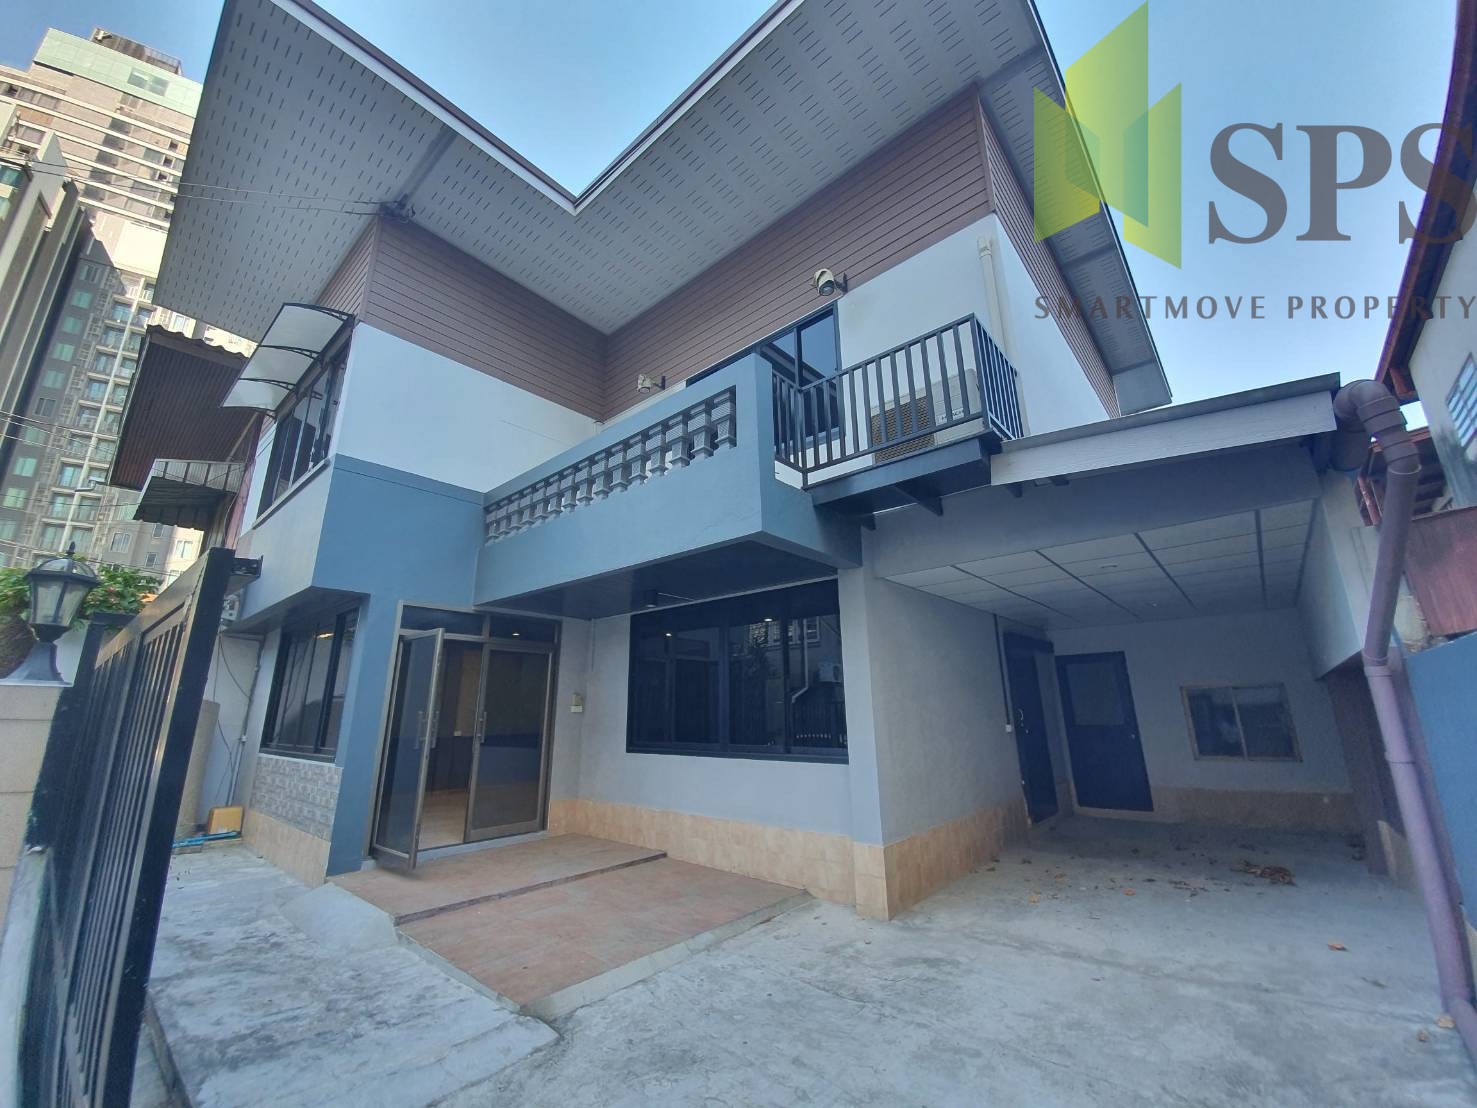 For Rent Single house for Home office in Ekkamai (SPSP405)